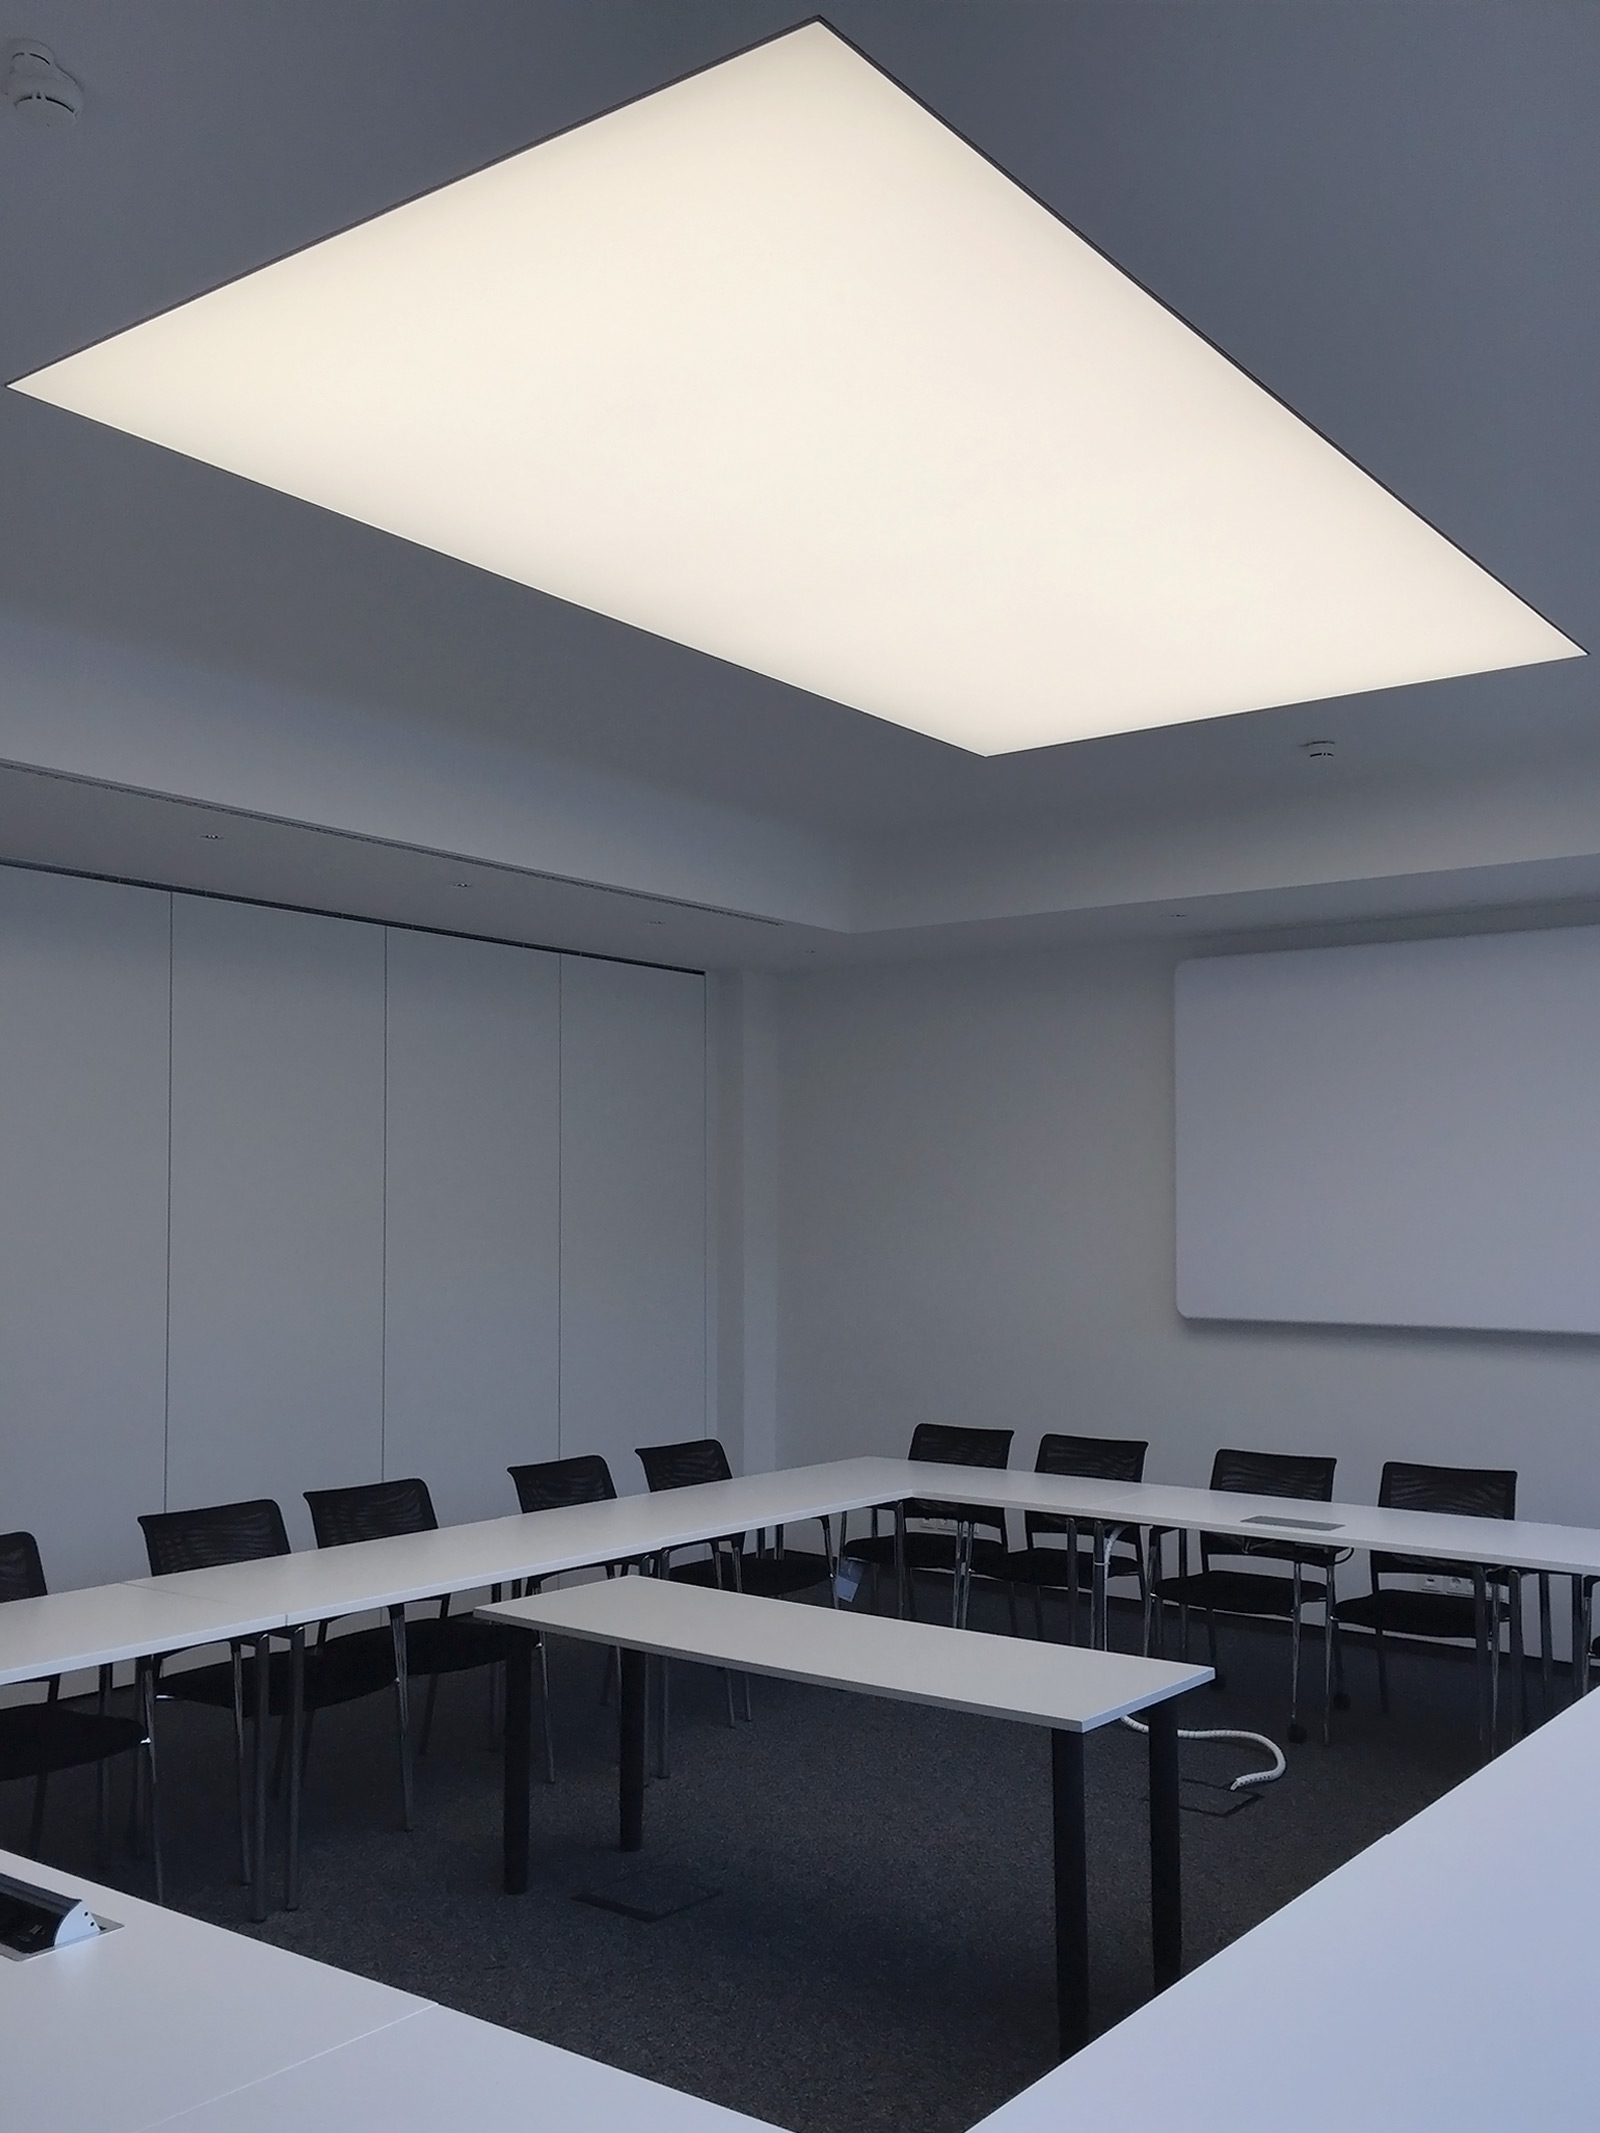 Konferenzraum mit einer großen LED-Lichtdecke